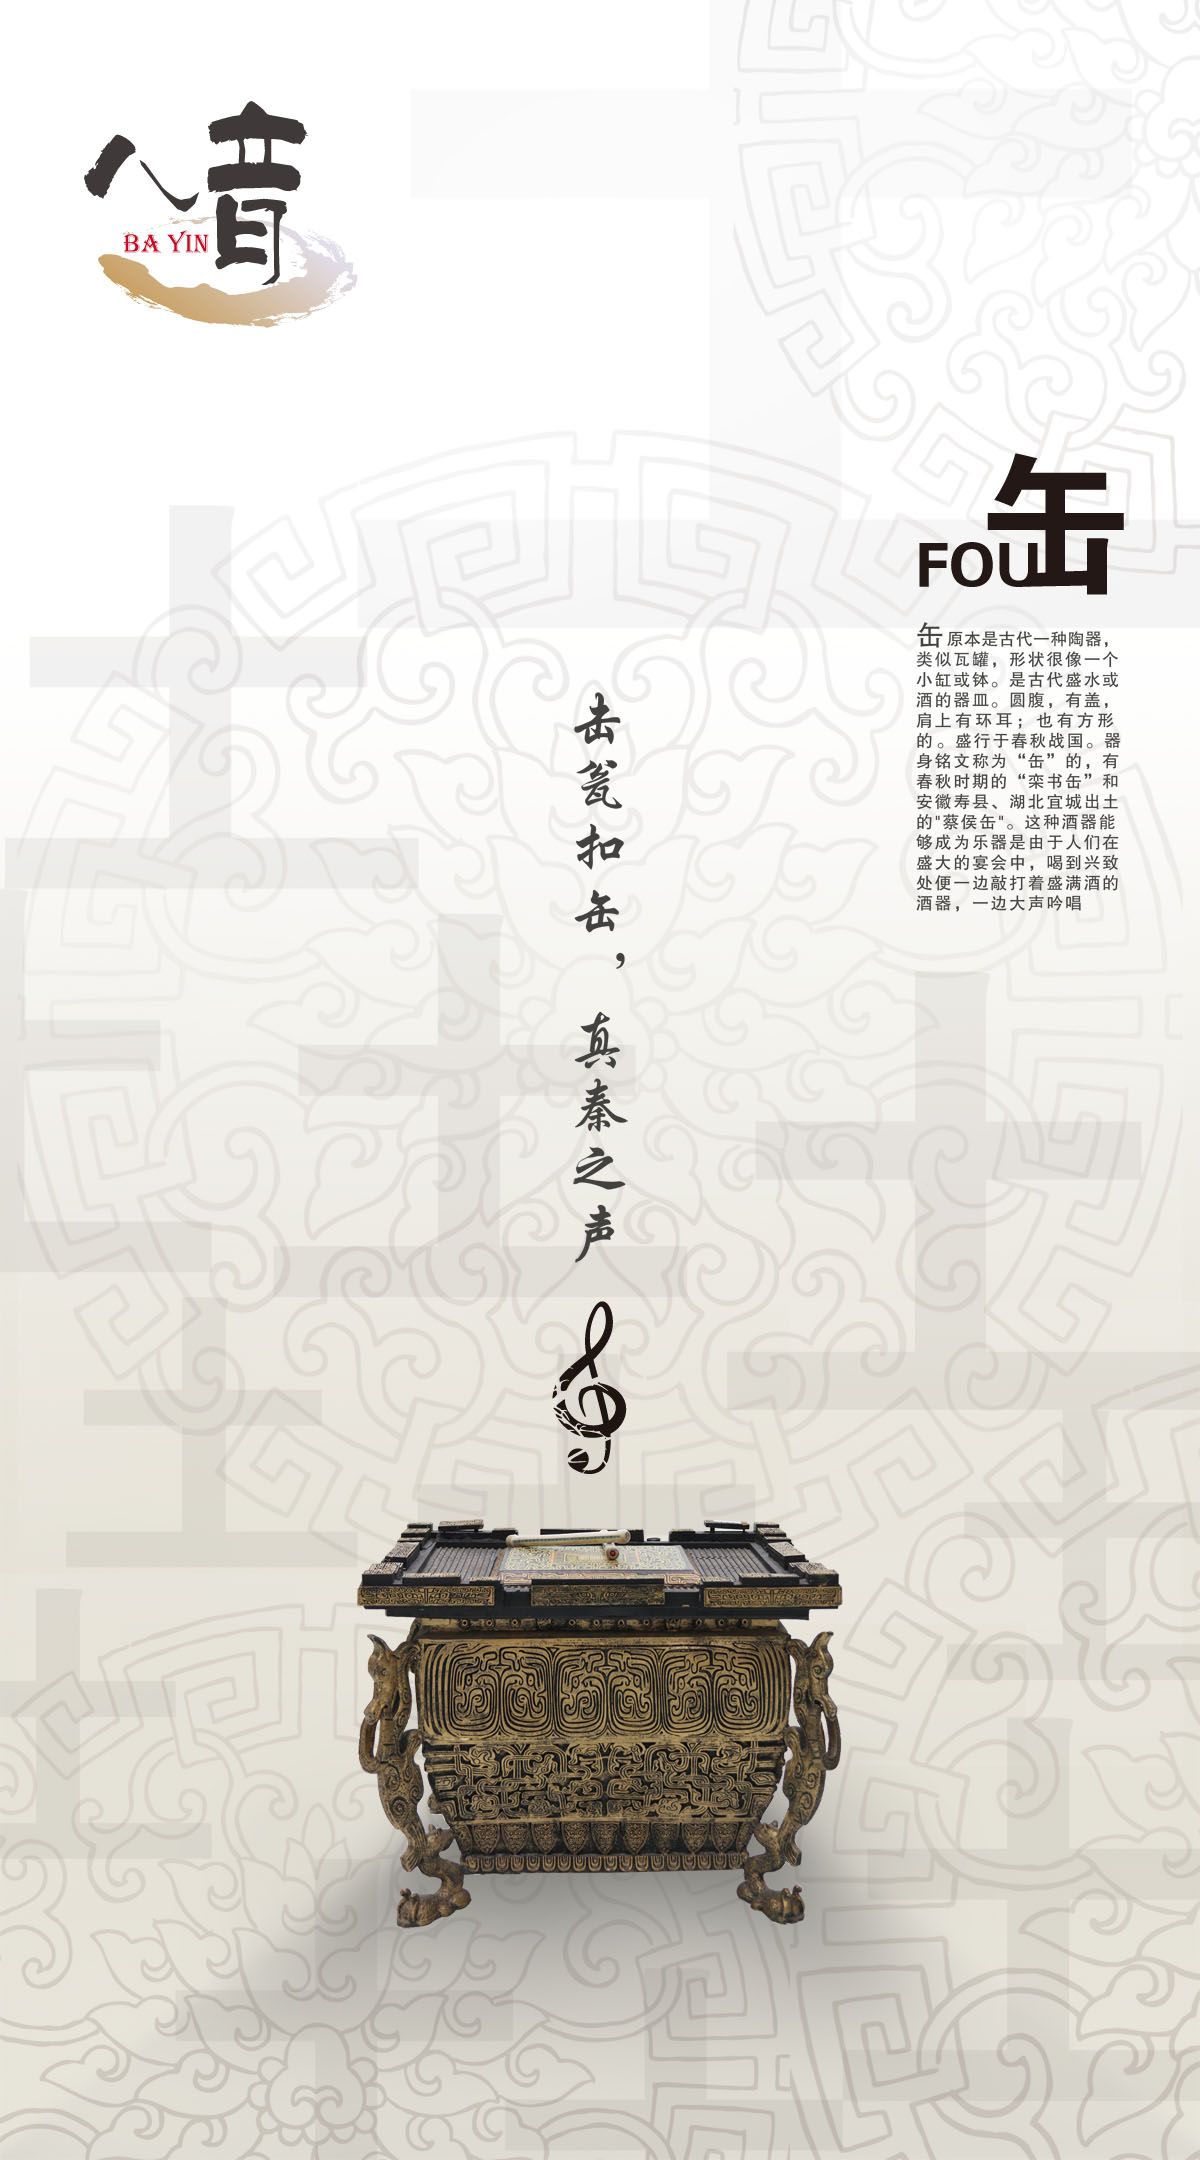 754海报印制展板写真喷绘492中国民间八音民族乐器介绍缶